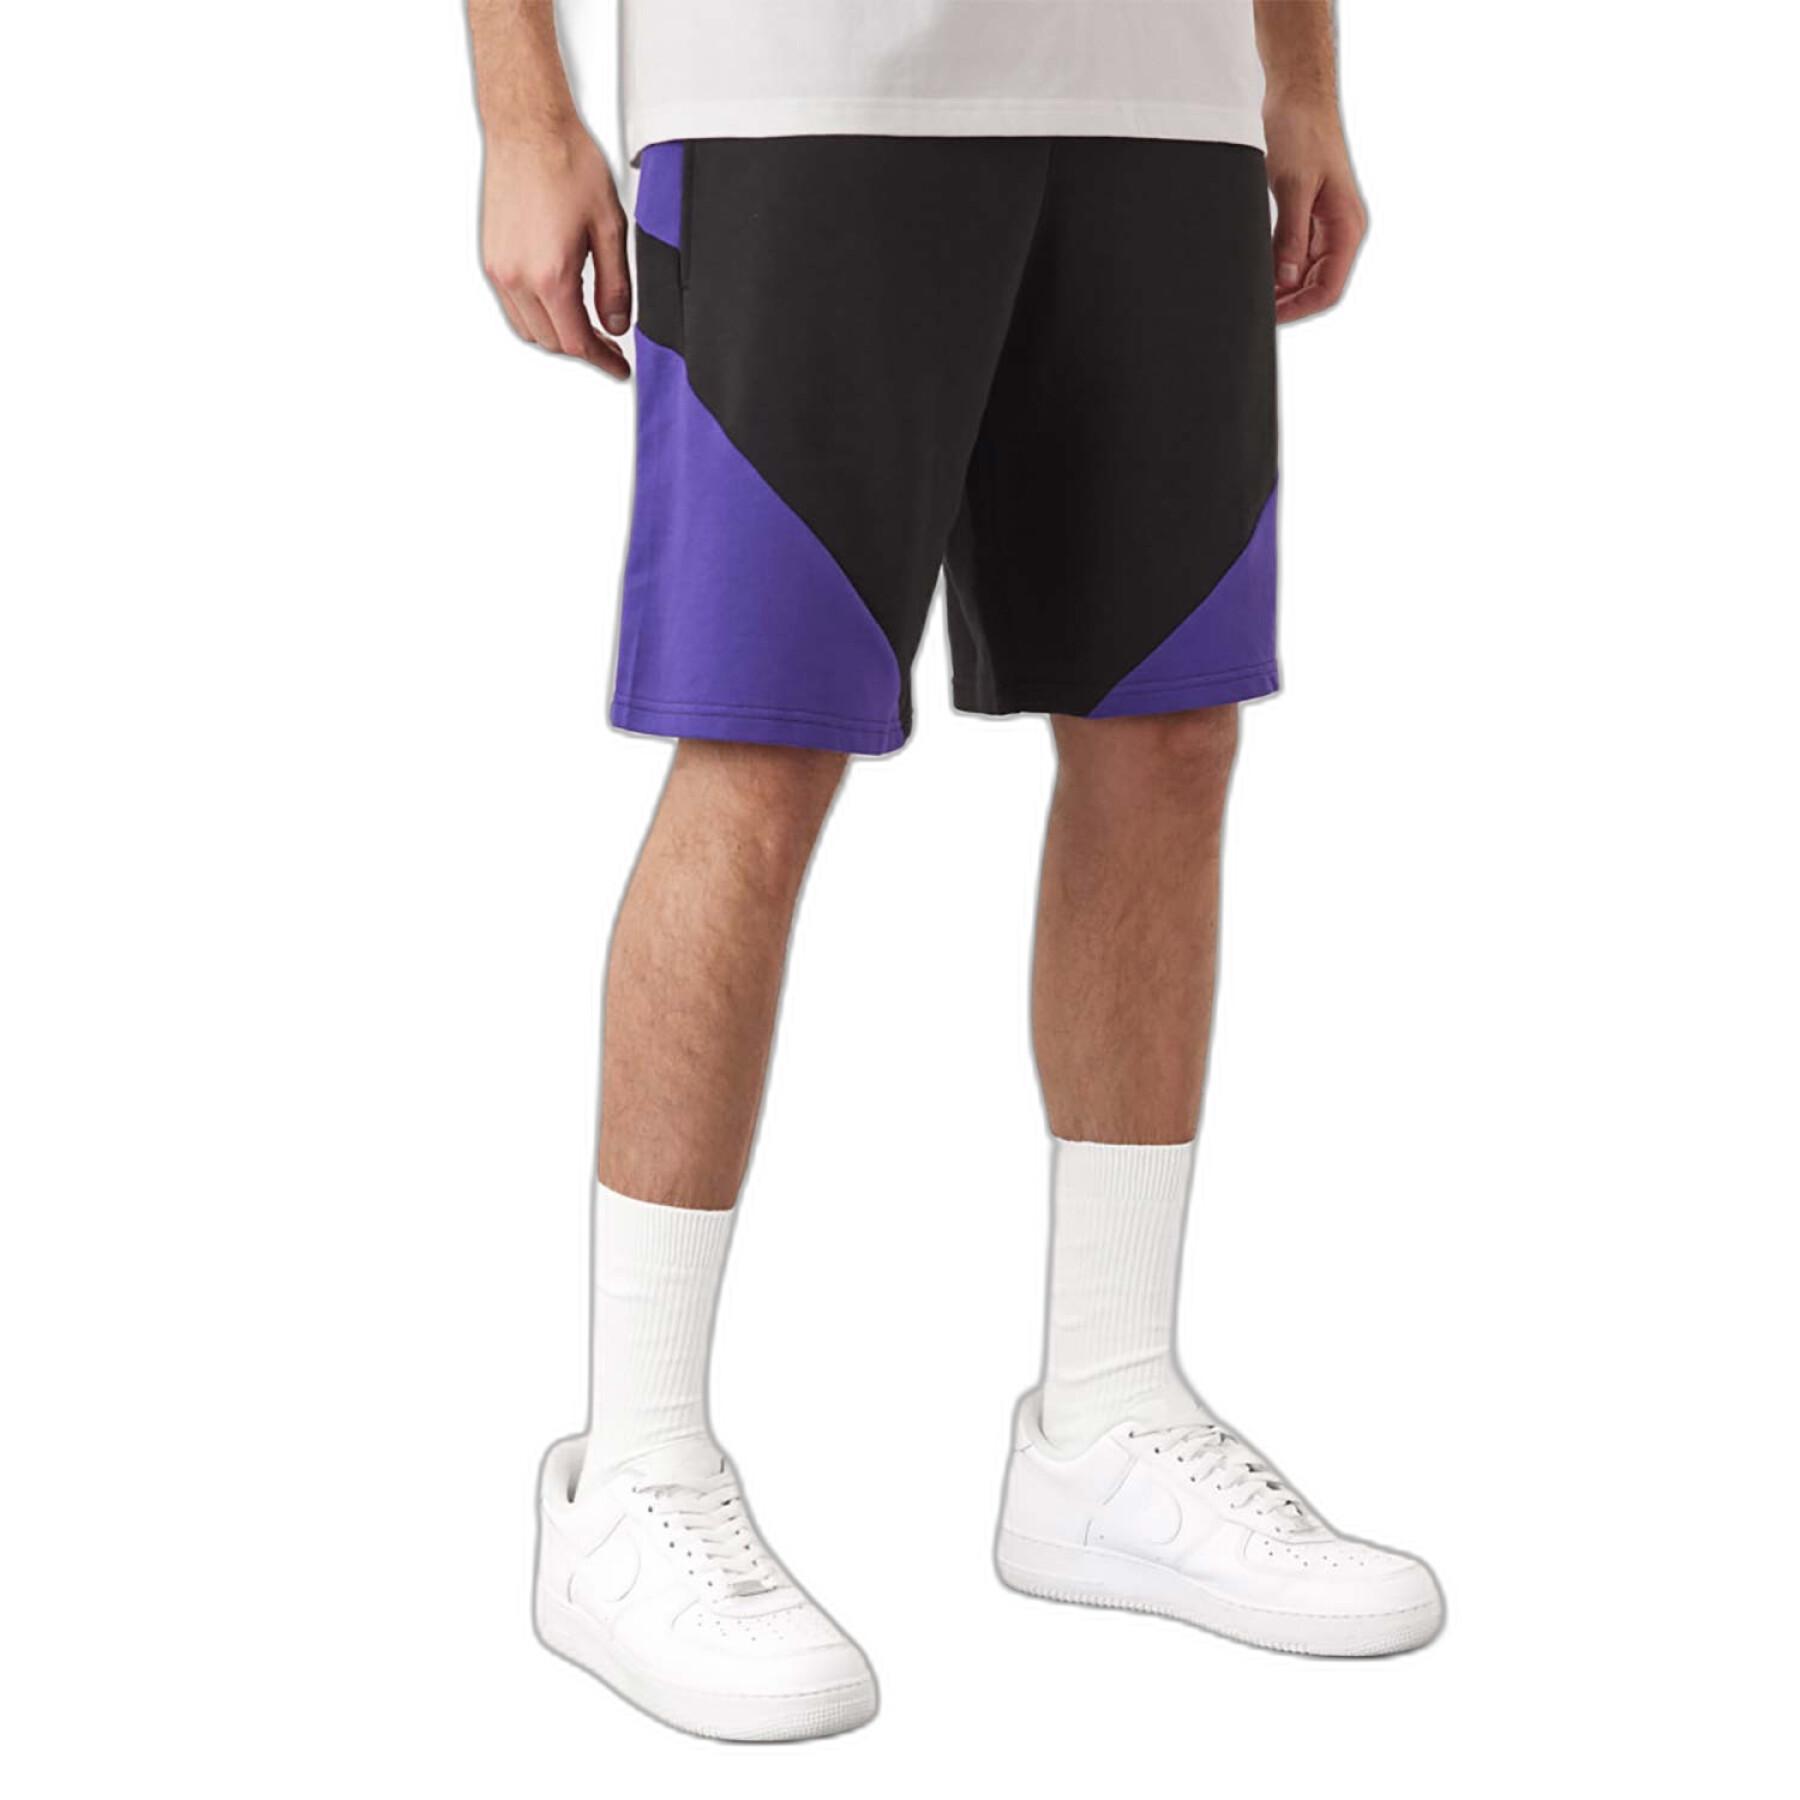 Shorts – LA Lakers NBA